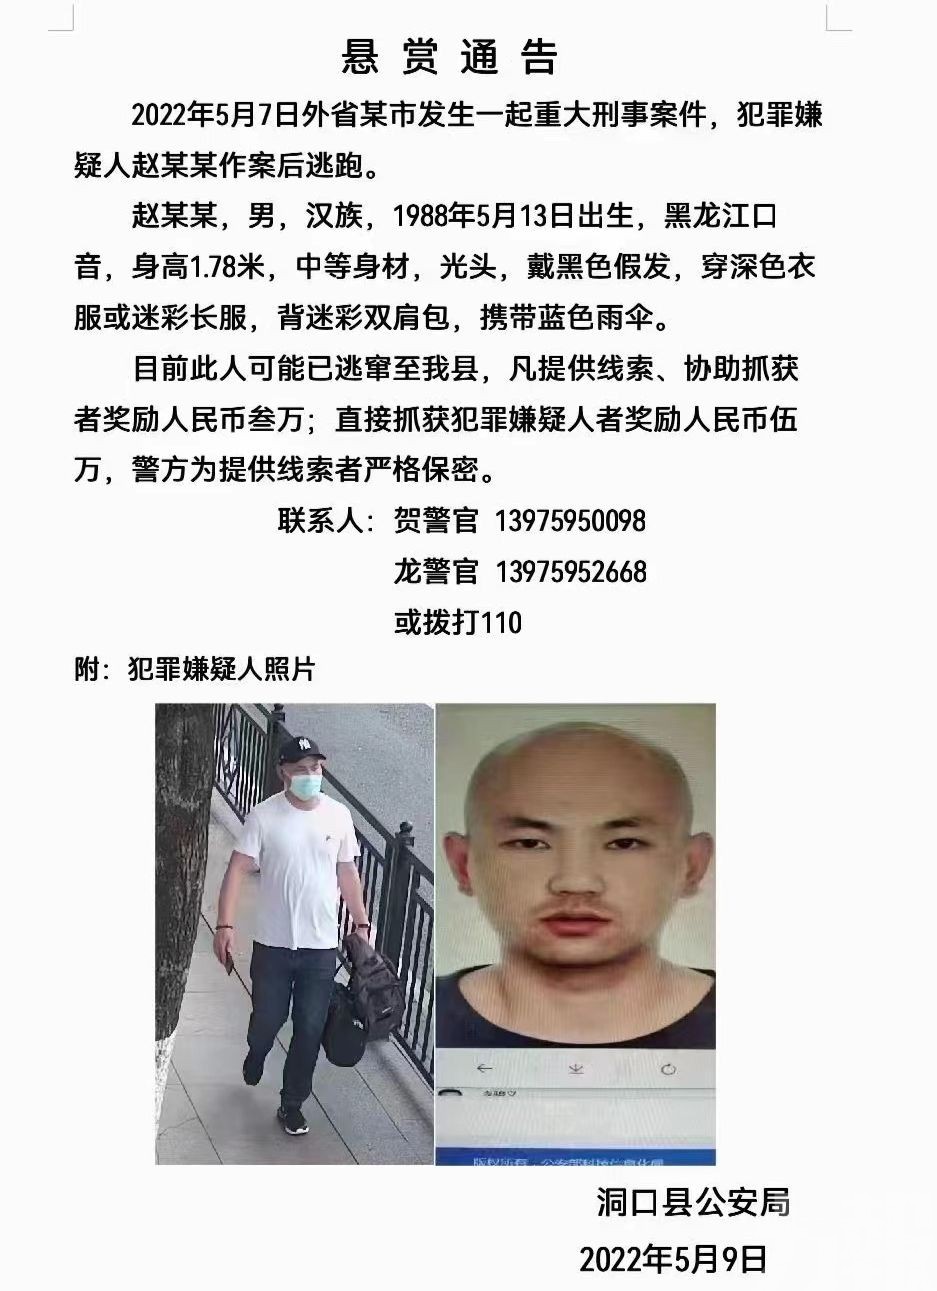 湖南省公安曾发布悬赏通告。